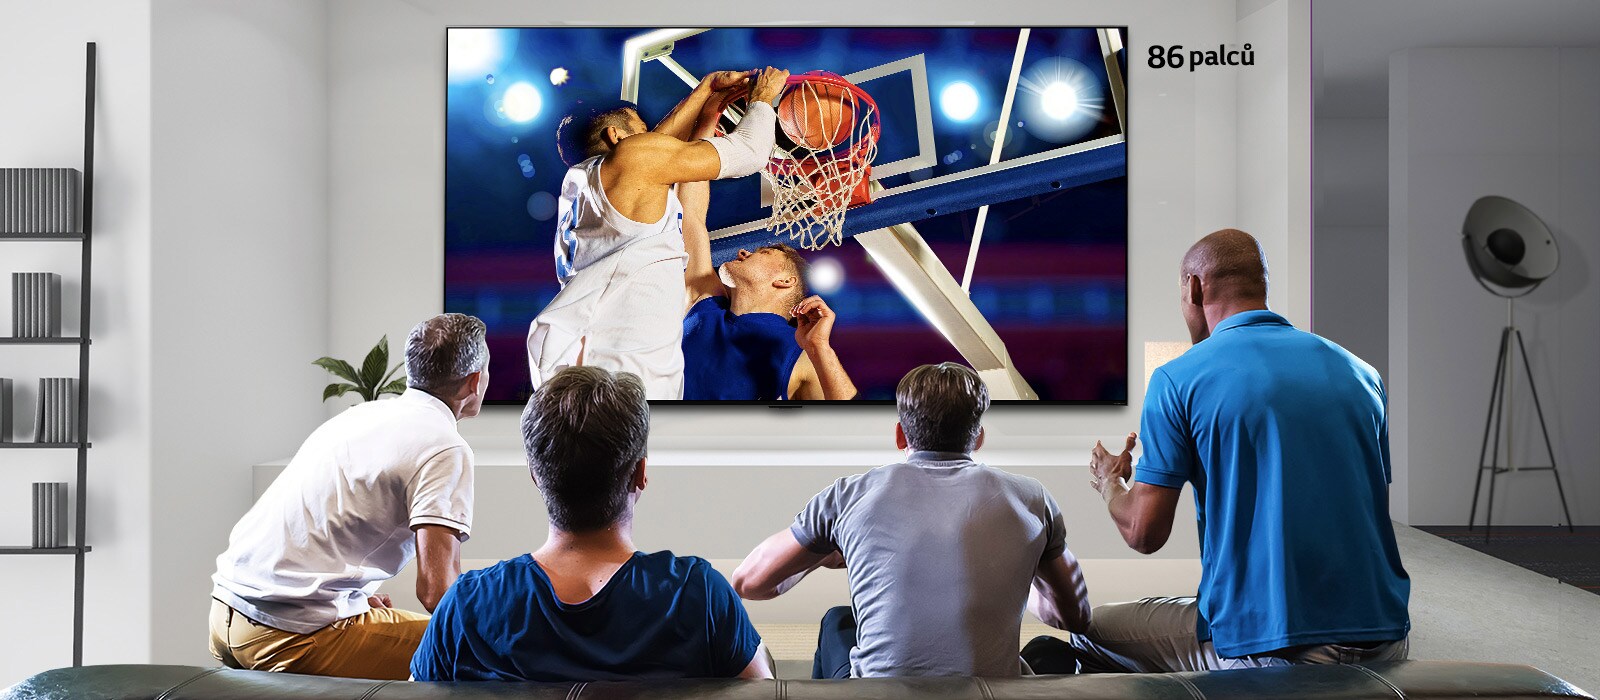 Pohled zezadu na TV připevněný na stěnu, na kterém se odehrává basketbalový zápas, který sledují čtyři muži. Posun zleva doprava ukazuje rozdíl ve velikosti 43palcové a 86palcové obrazovky.